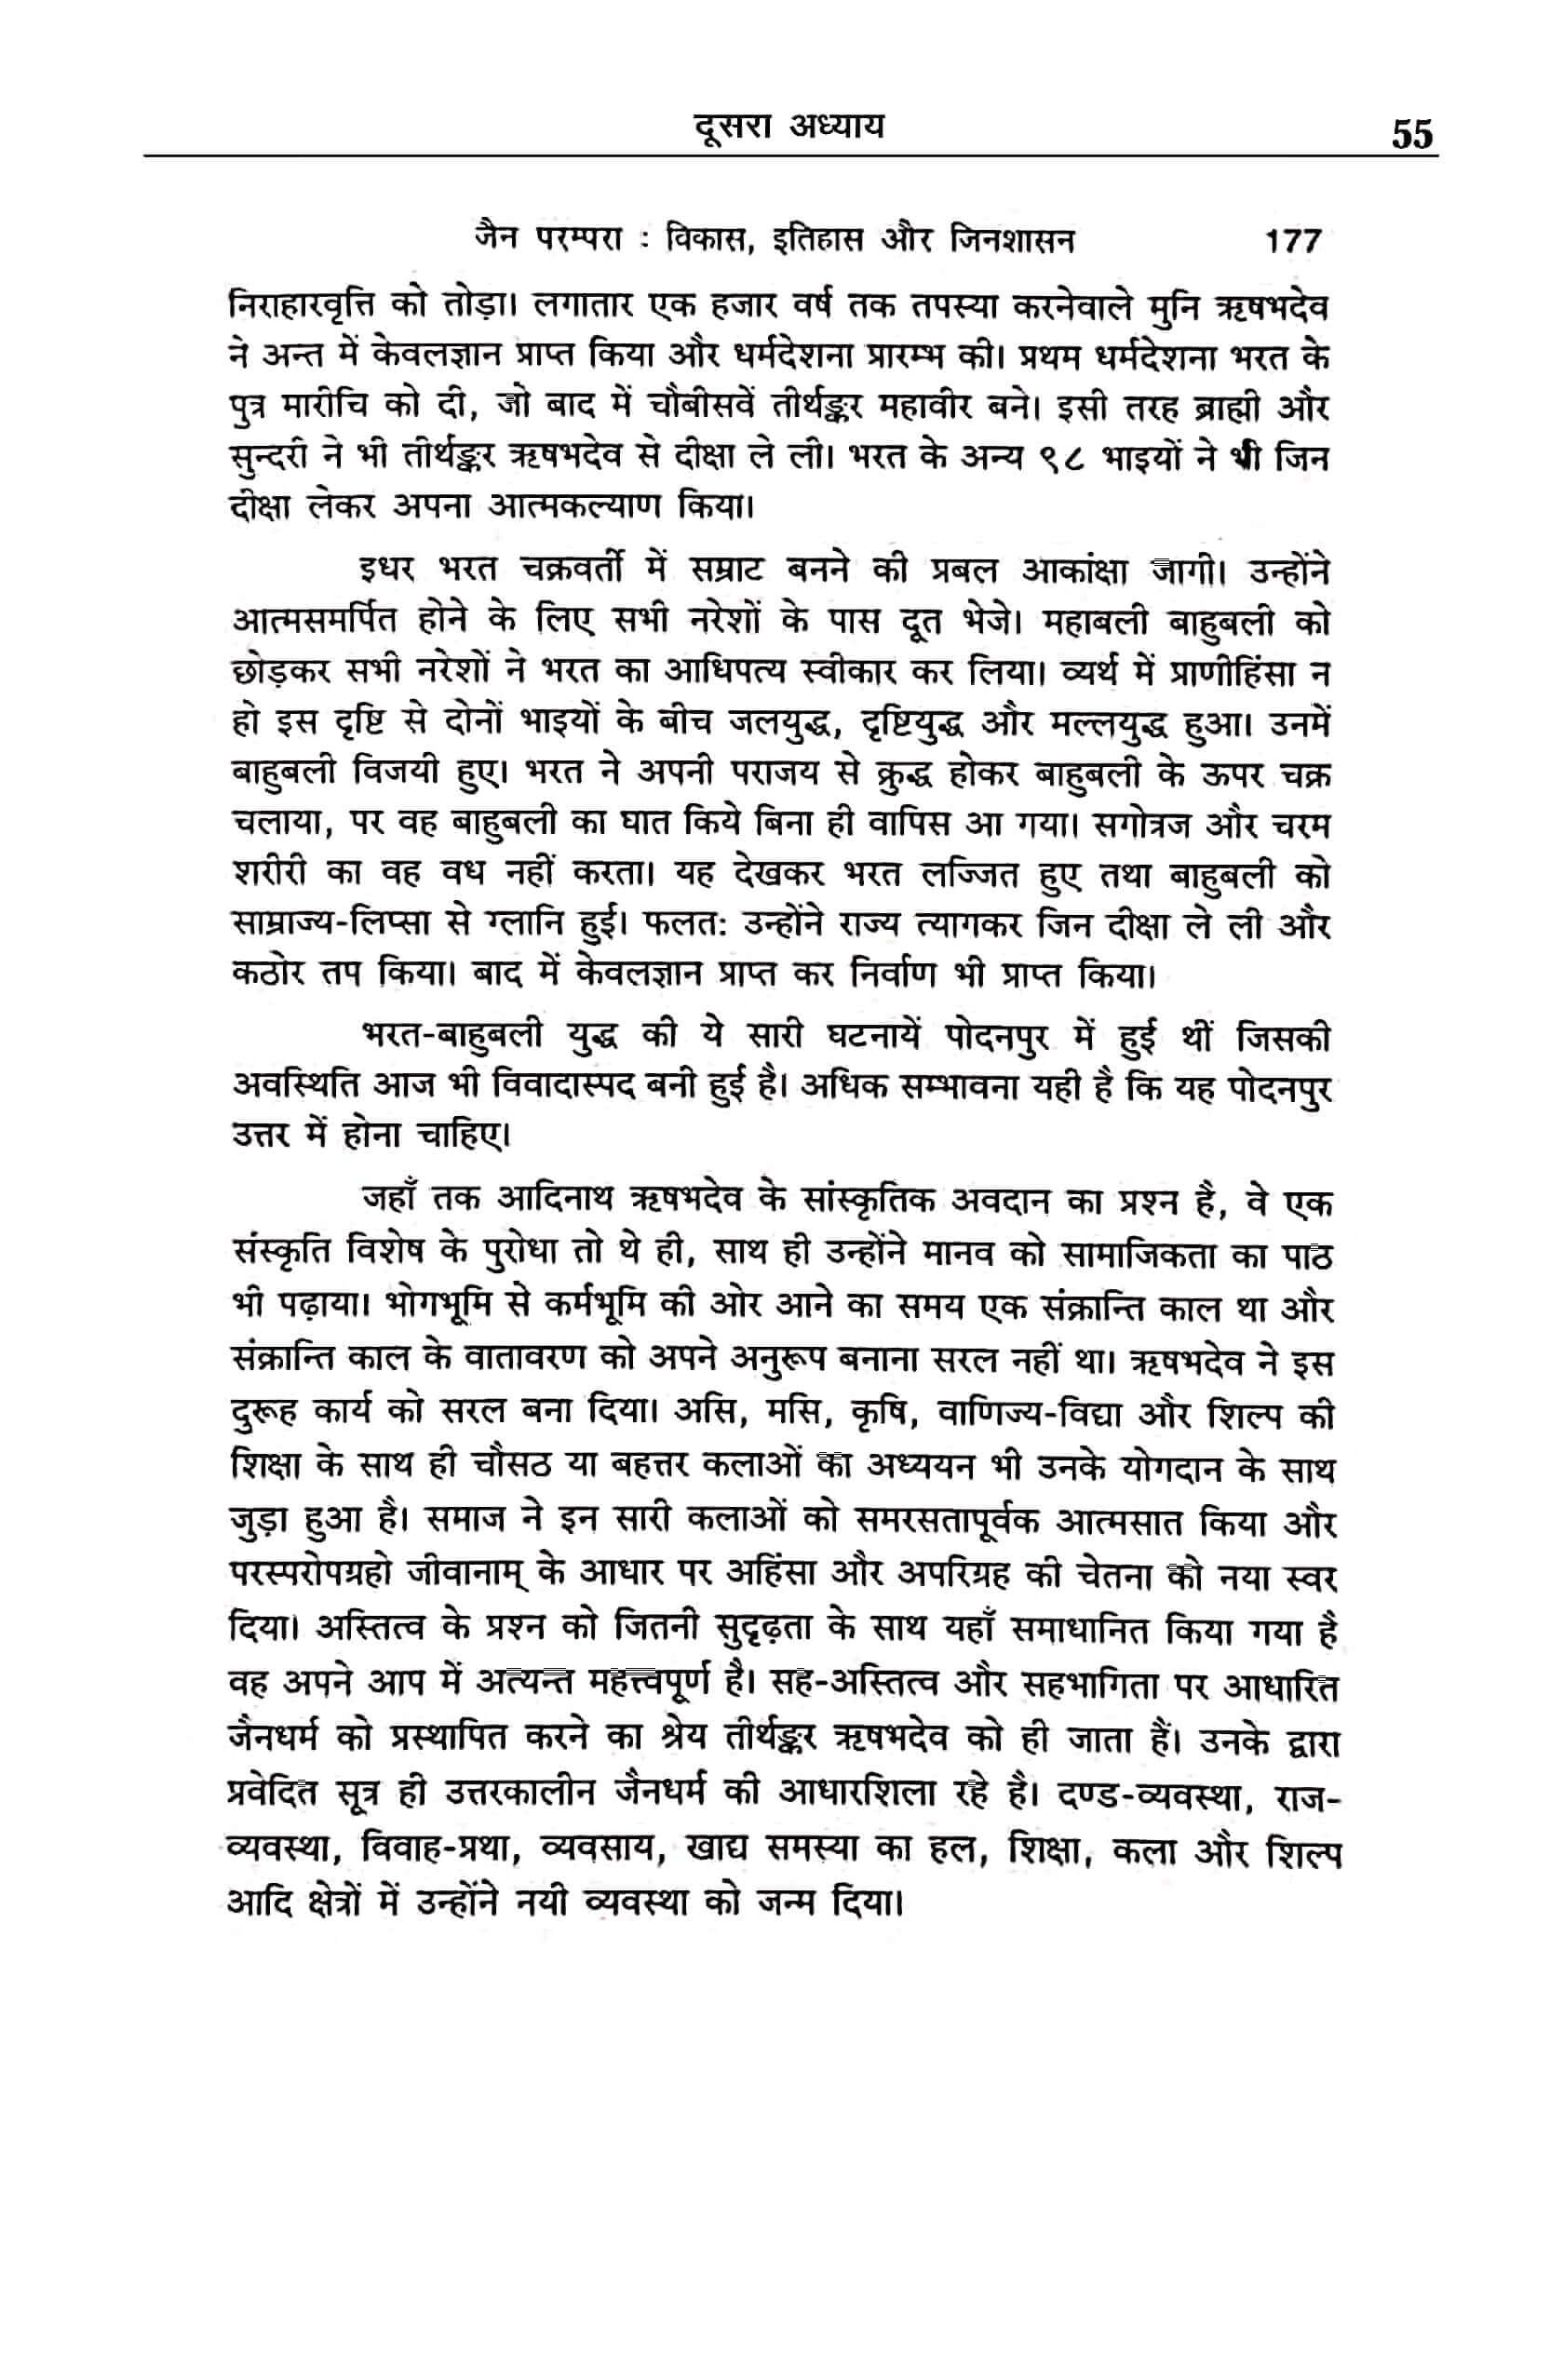 hindu-saheban-nahin-samjhe-gita-ved-puran-page-55